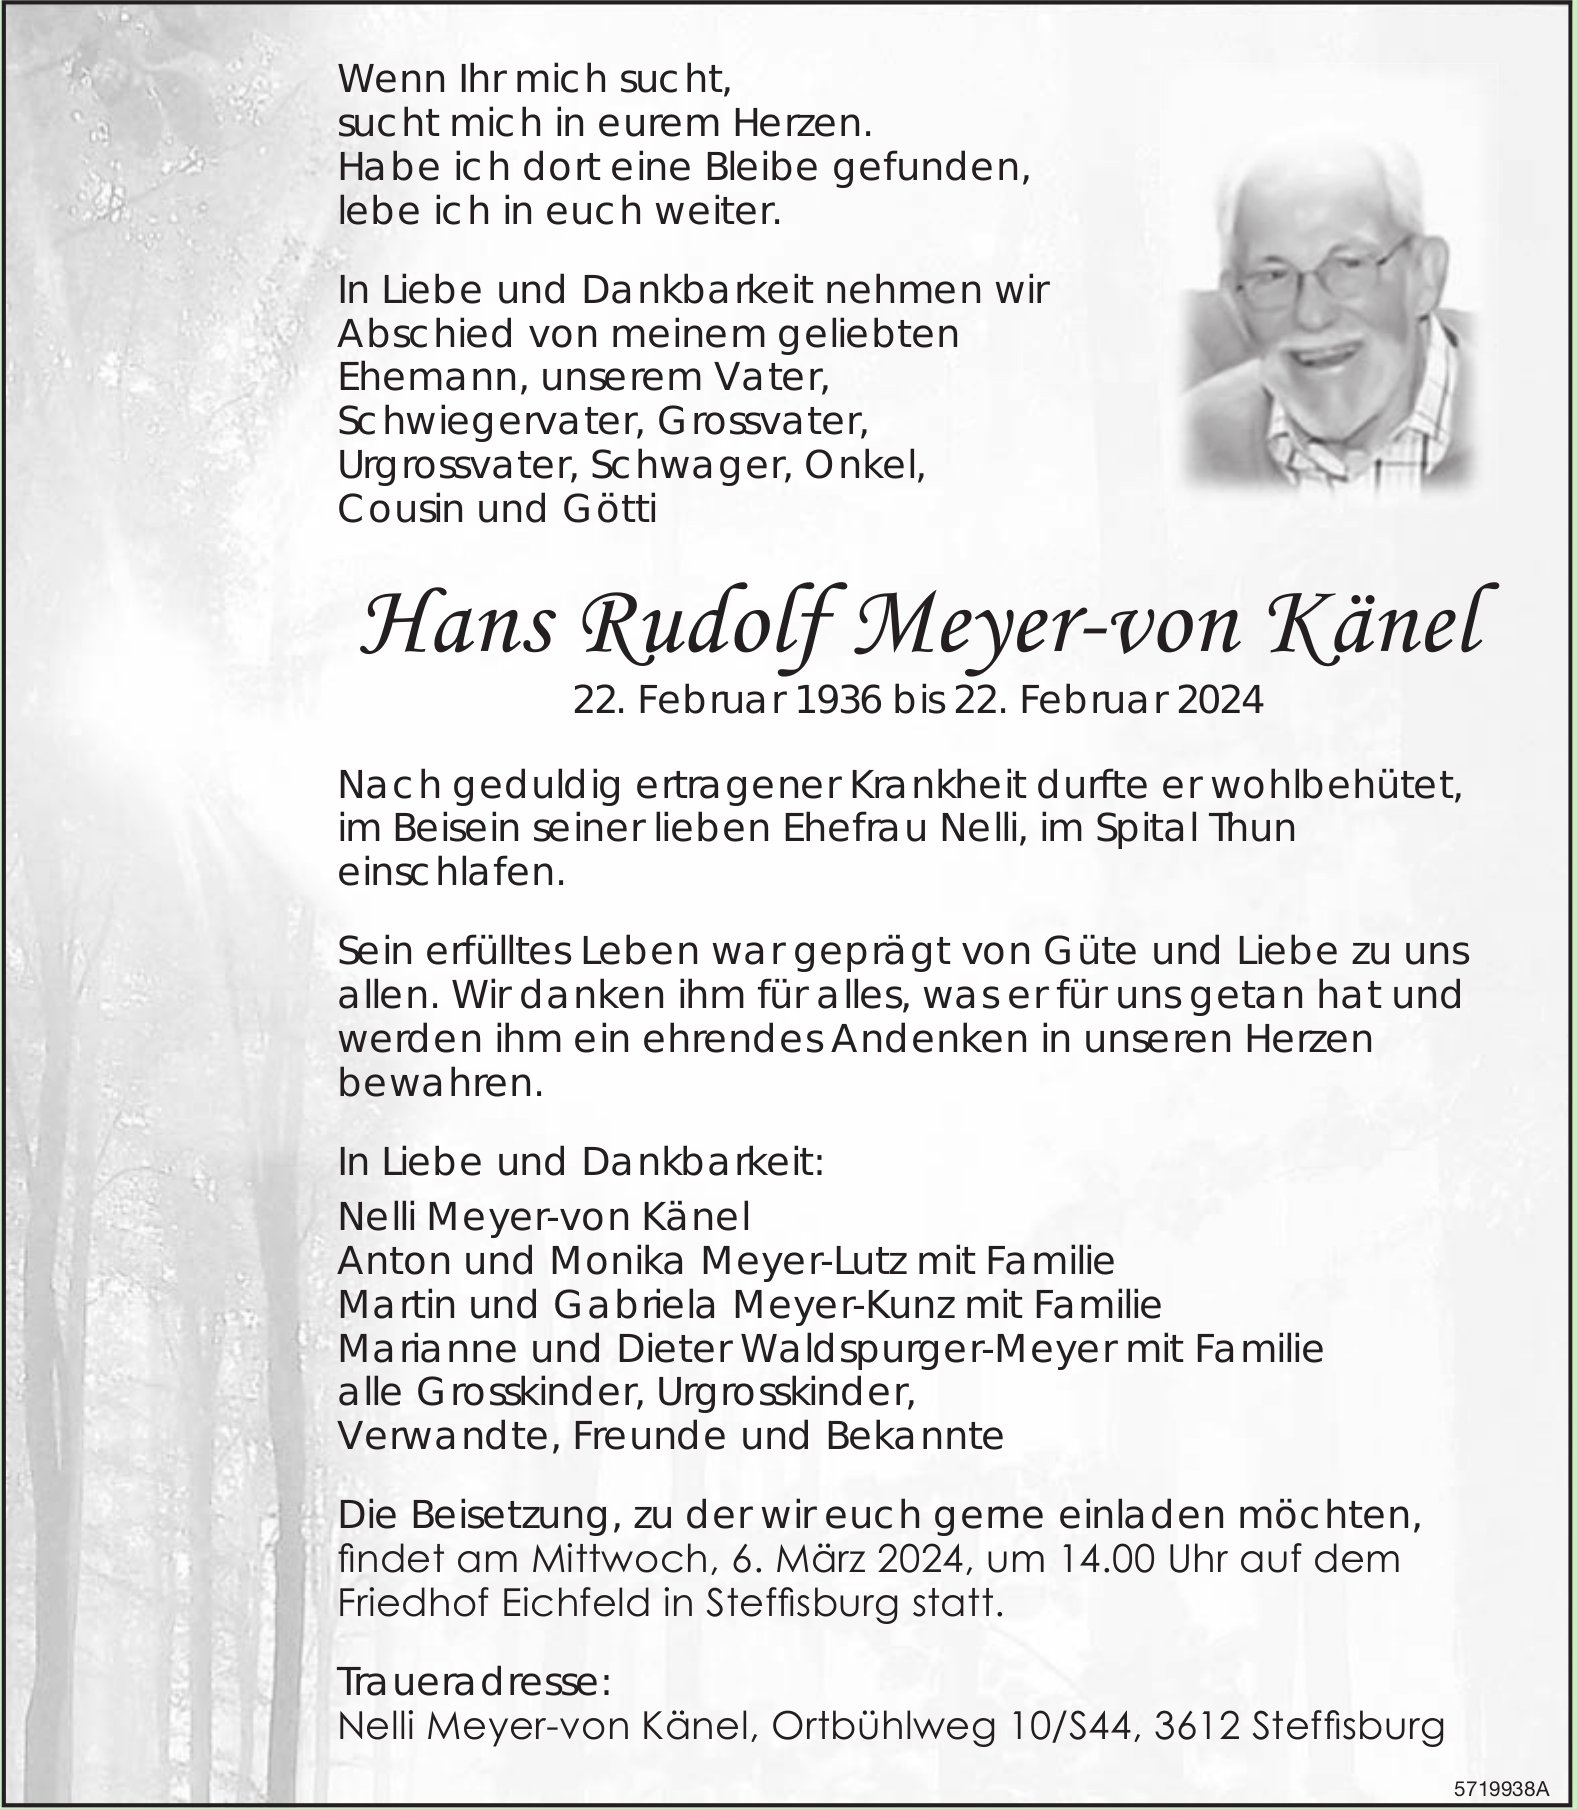 Meyer-von Känel Hans Rudolf, Februar 2024 / TA